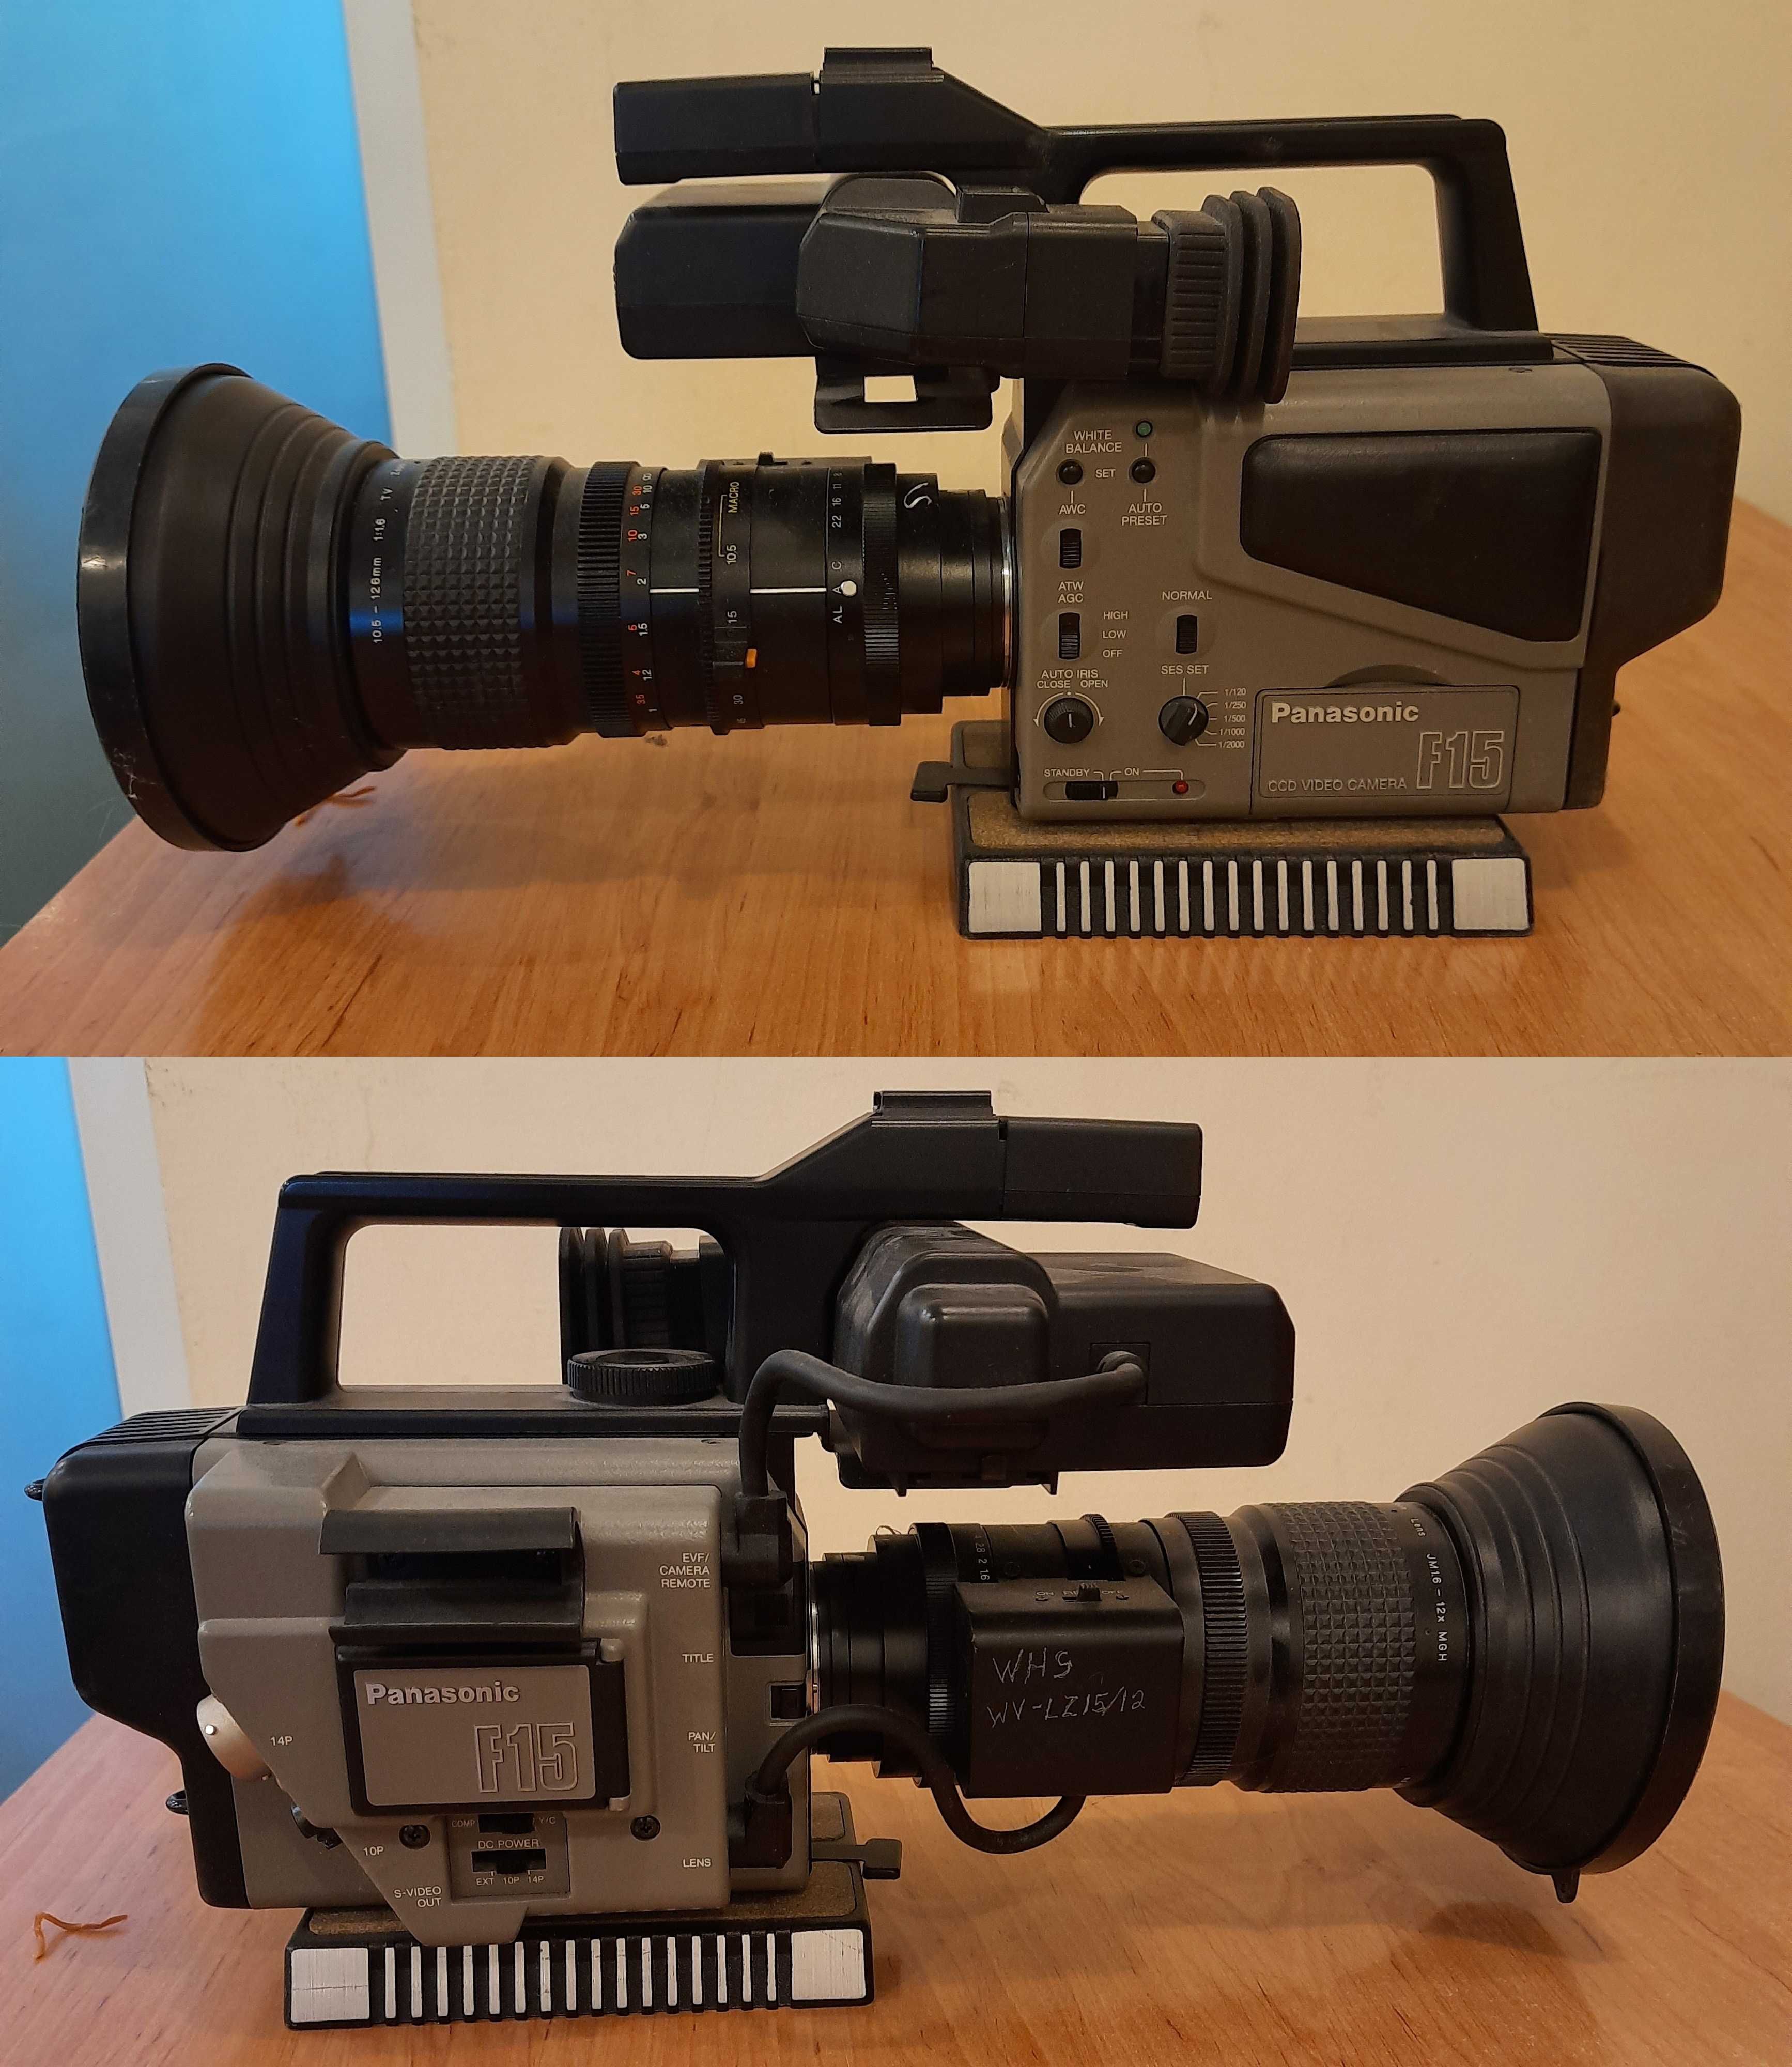 Panasonic F15 CCD Профессиональная видео камера Super VHS